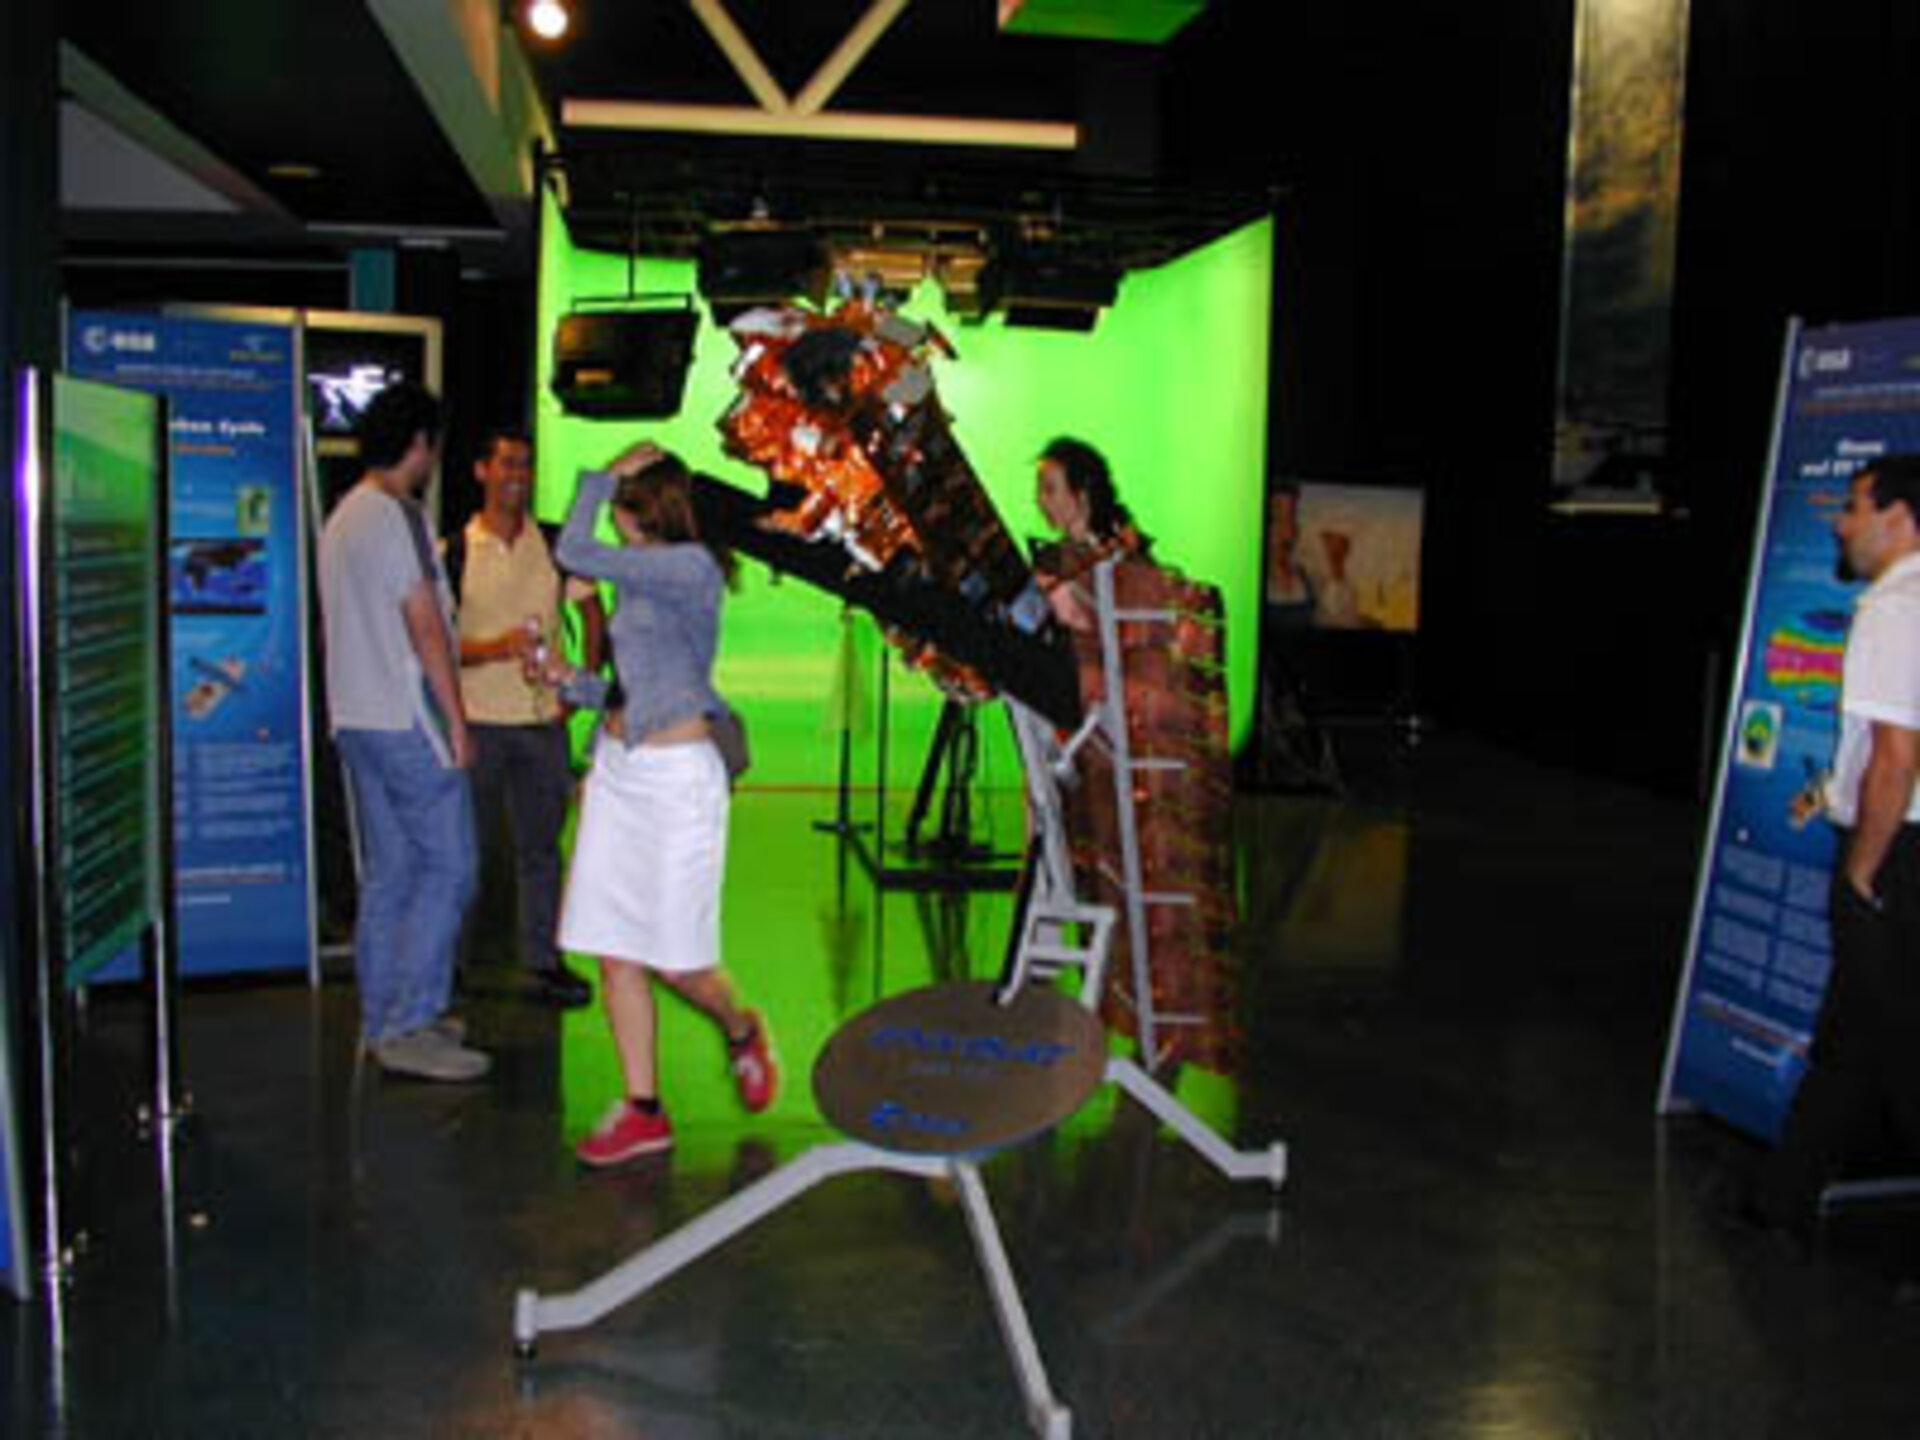 22nd March 2002 - Envisat Exhibit in Las Palmas de Gran Canaria - Spain